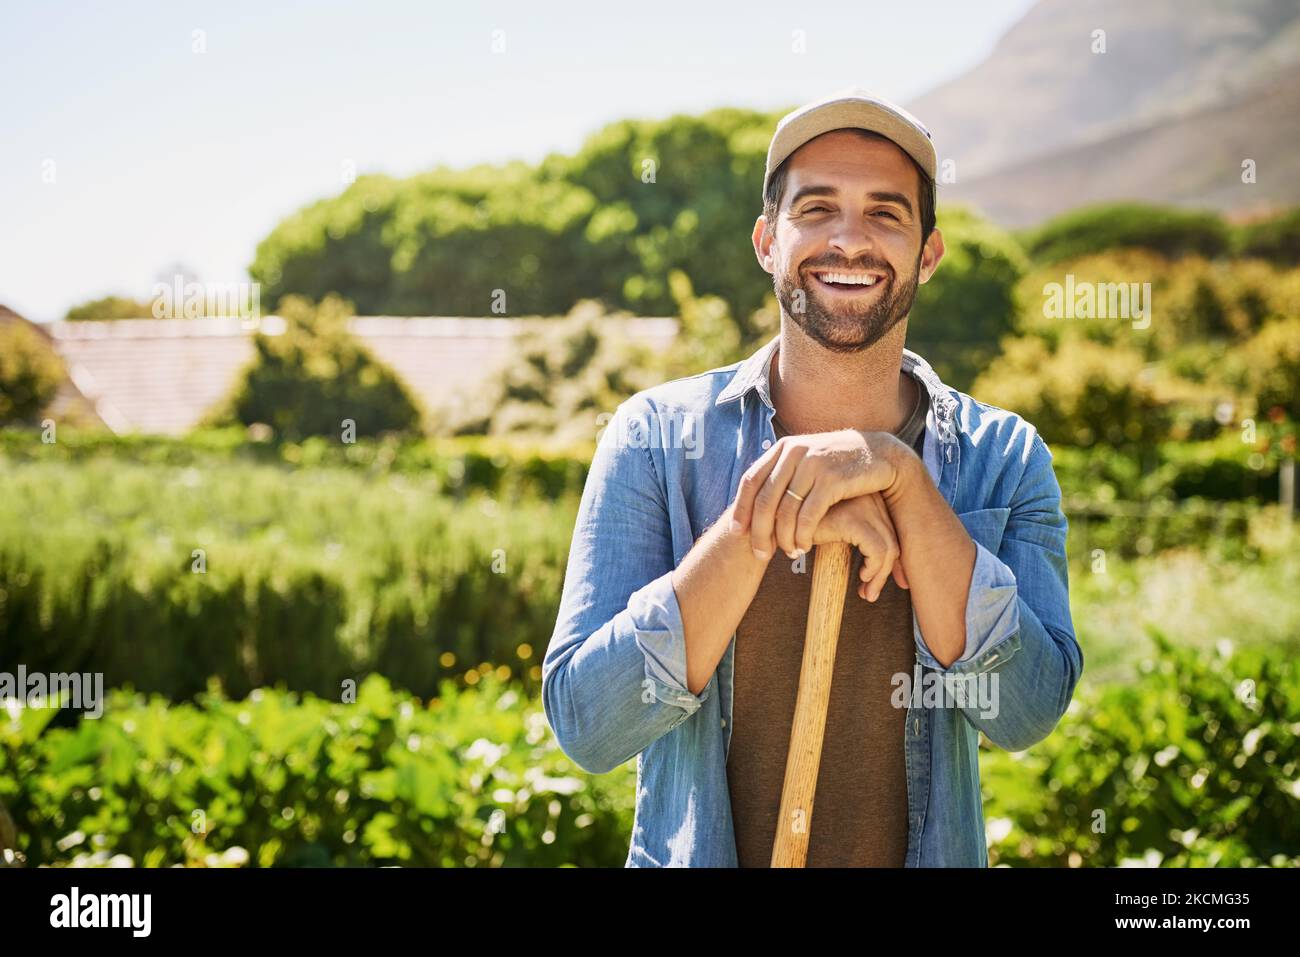 La mia fattoria è la mia vita. Ritratto di un giovane agricoltore felice che tiene una spade mentre si posa nei campi della sua fattoria. Foto Stock